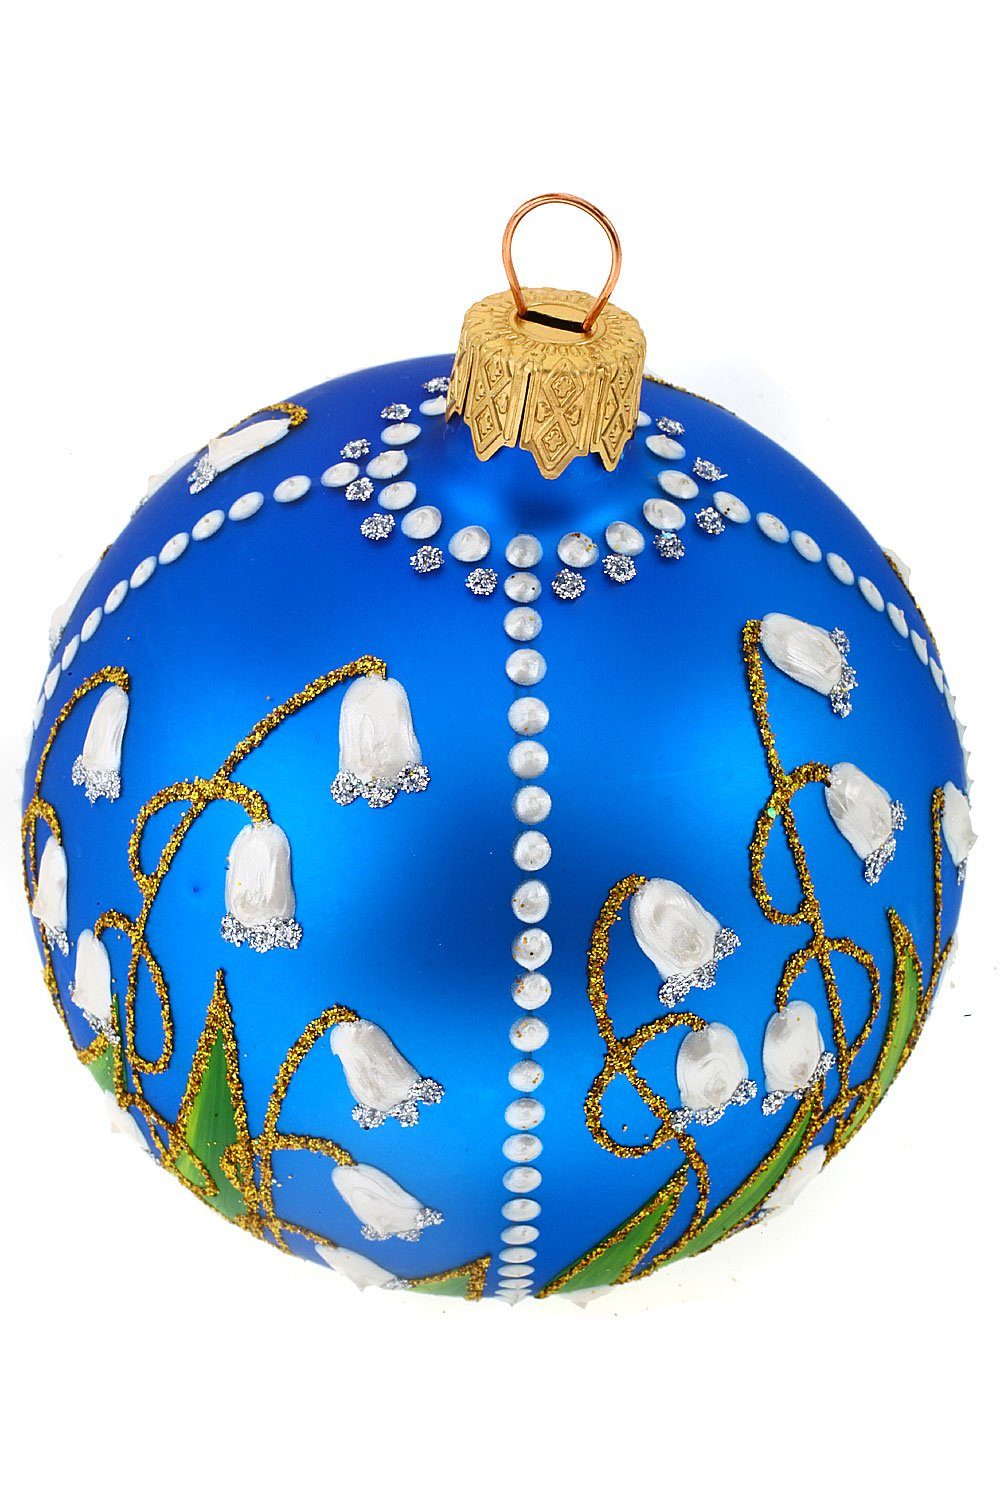 Christbaumkugel blau, mit Weihnachtskontor Maiglöckchen handdekoriert Weihnachtsbaumkugel Hamburger mundgeblasen -